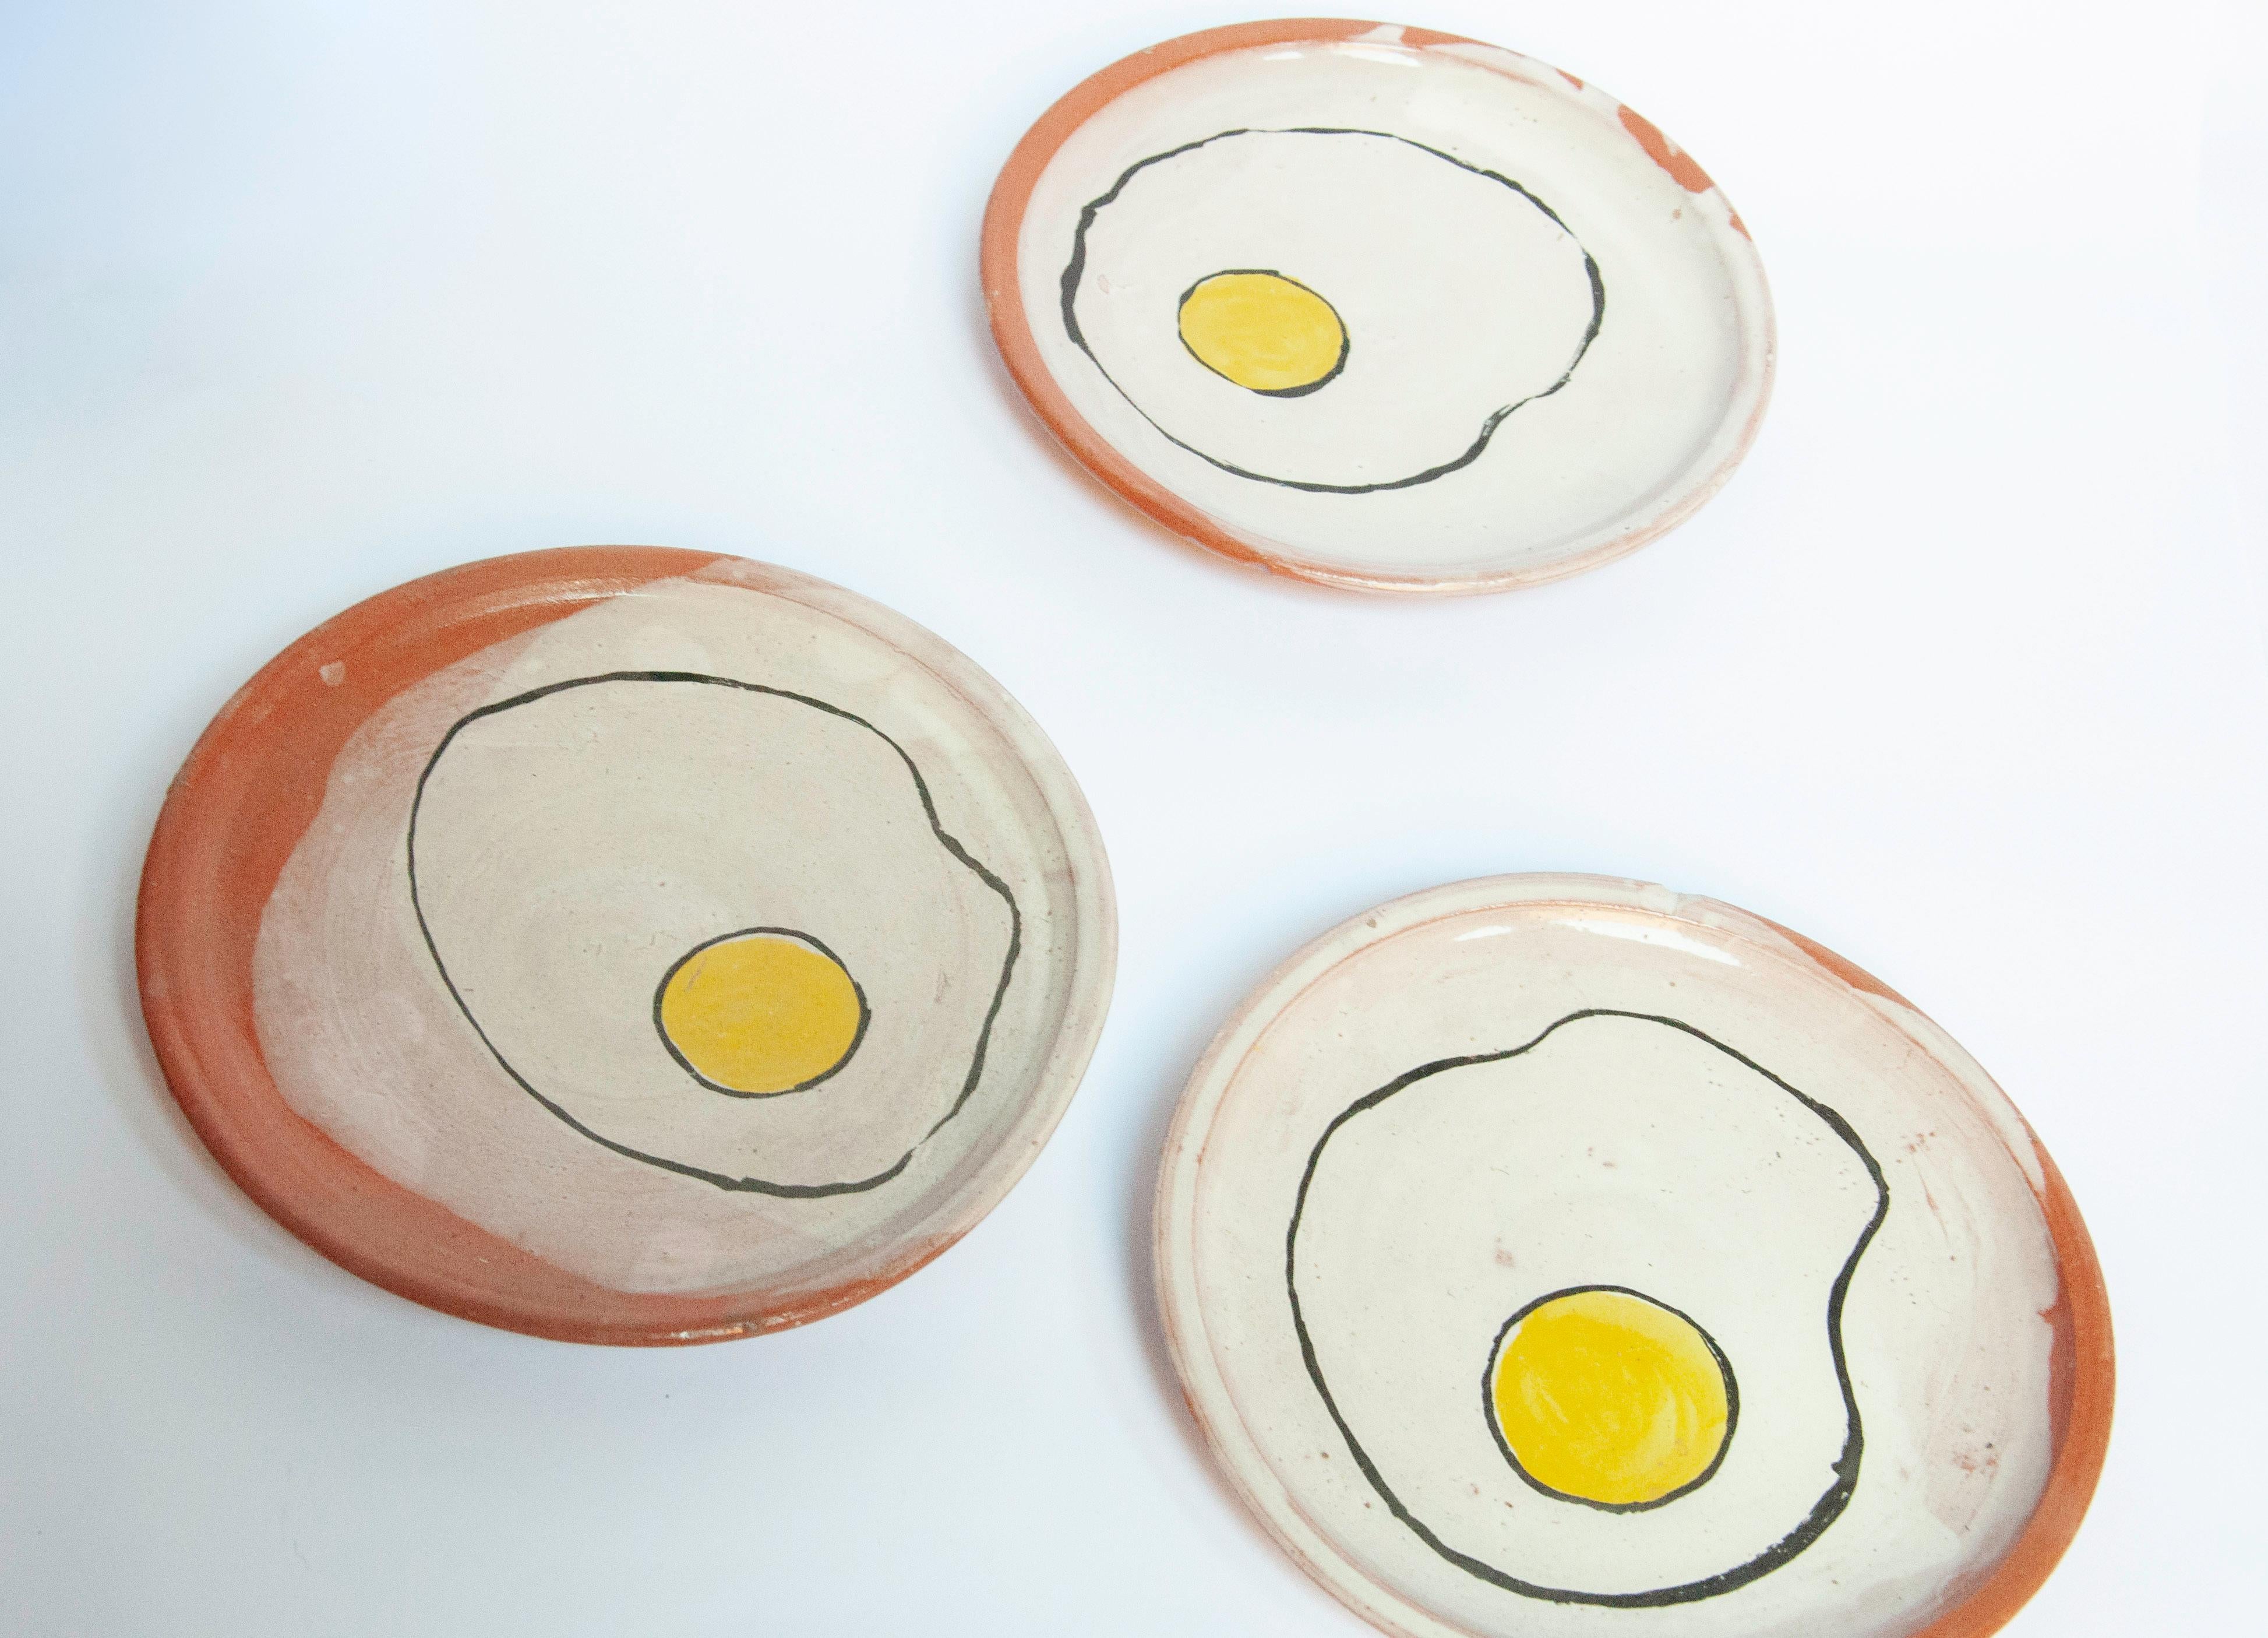 Keramikset mit 8 Tellern und Salz- und Pfefferstreuer im modernen Eierdesign von Lorenzo Lorenzzo

Lorenzo spielt mit seiner Arbeit auf seine Lieblingsmahlzeit, das Frühstück, an und entwirft ein zeitgenössisches Design für diese Tellerkollektion.